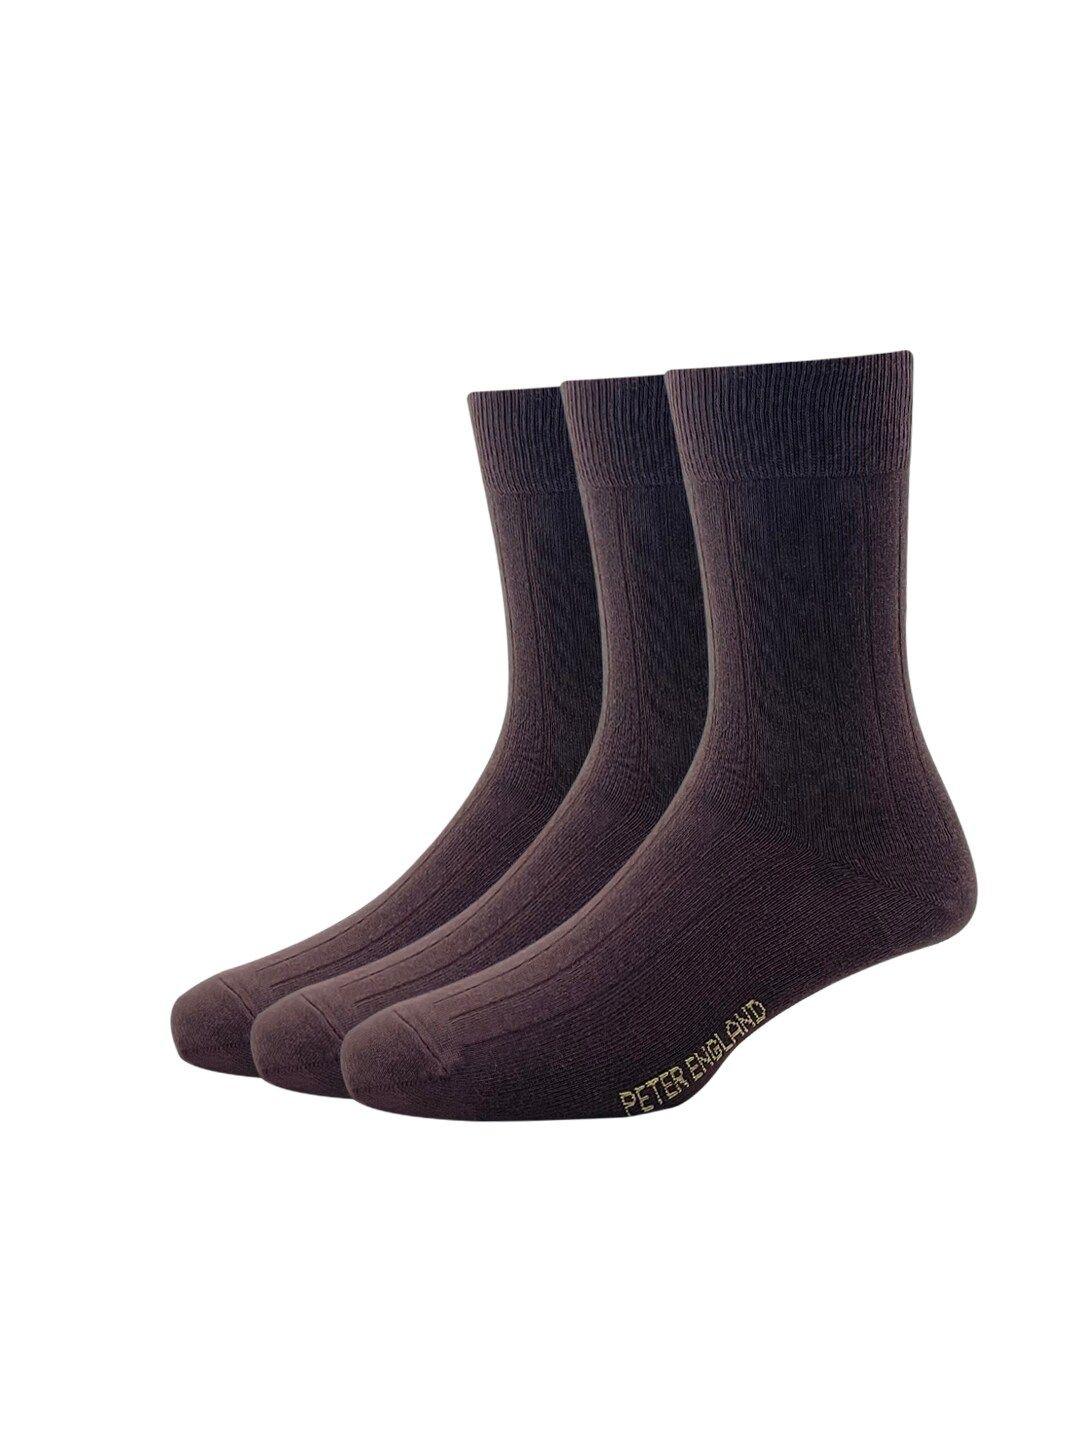 peter-england-men-pack-of-3-brown-calf-length-socks